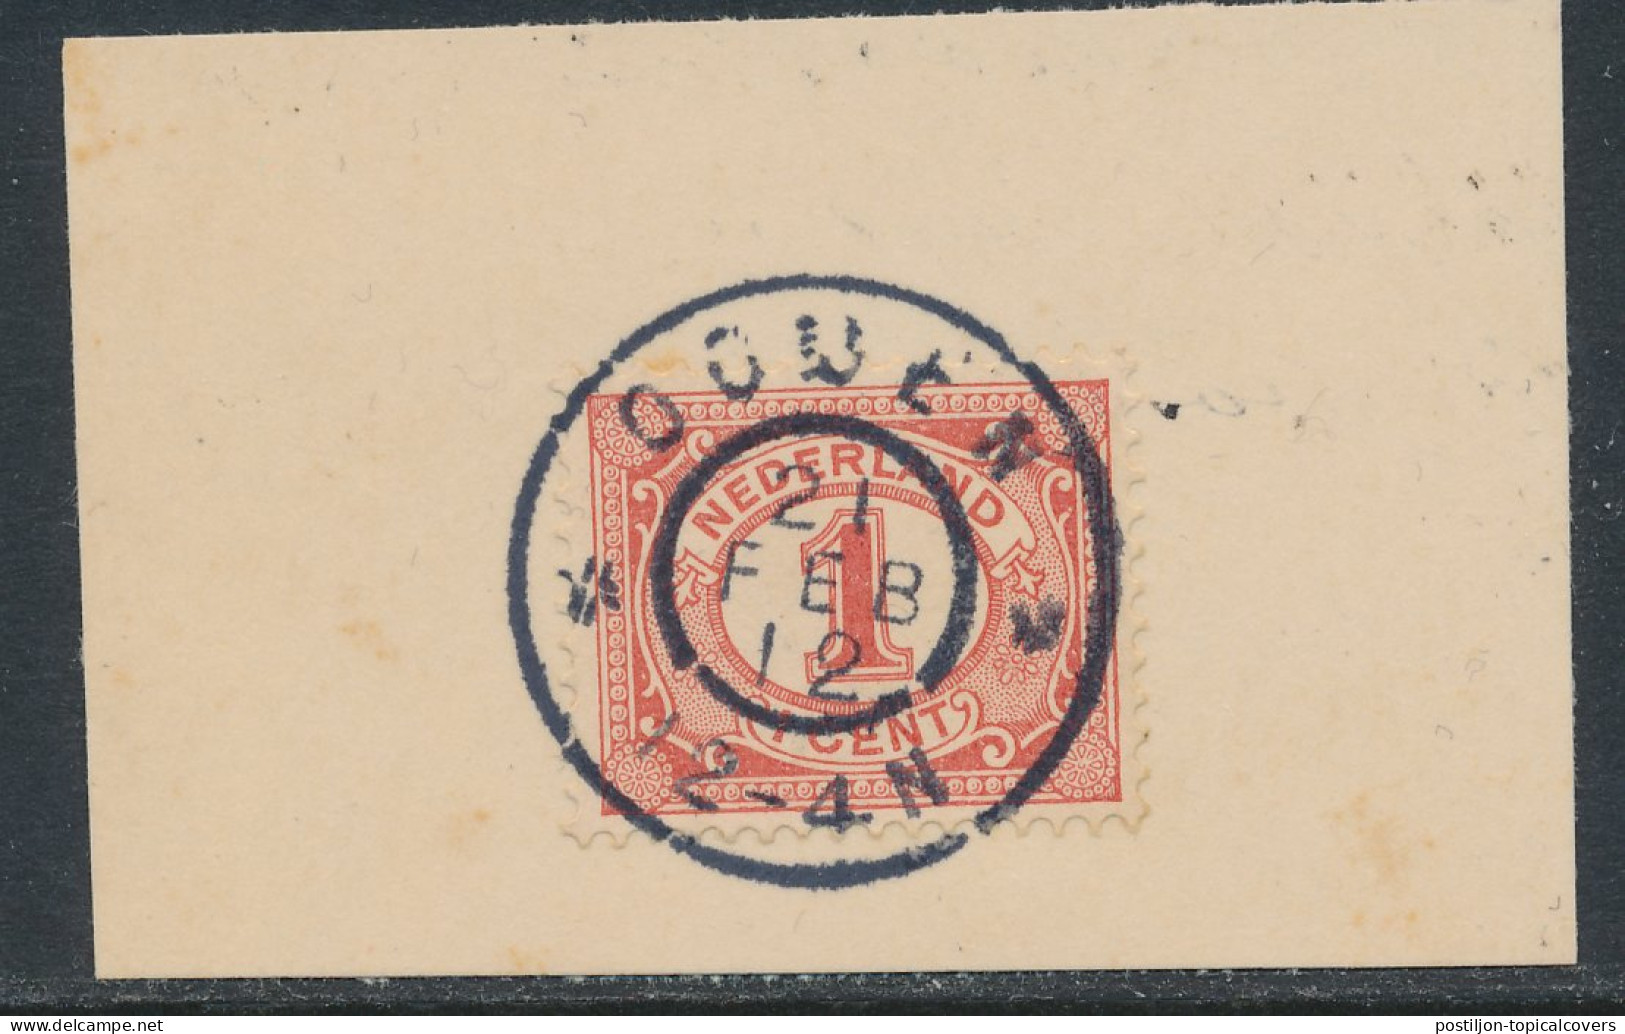 Grootrondstempel Ooijen 1912 - Poststempel